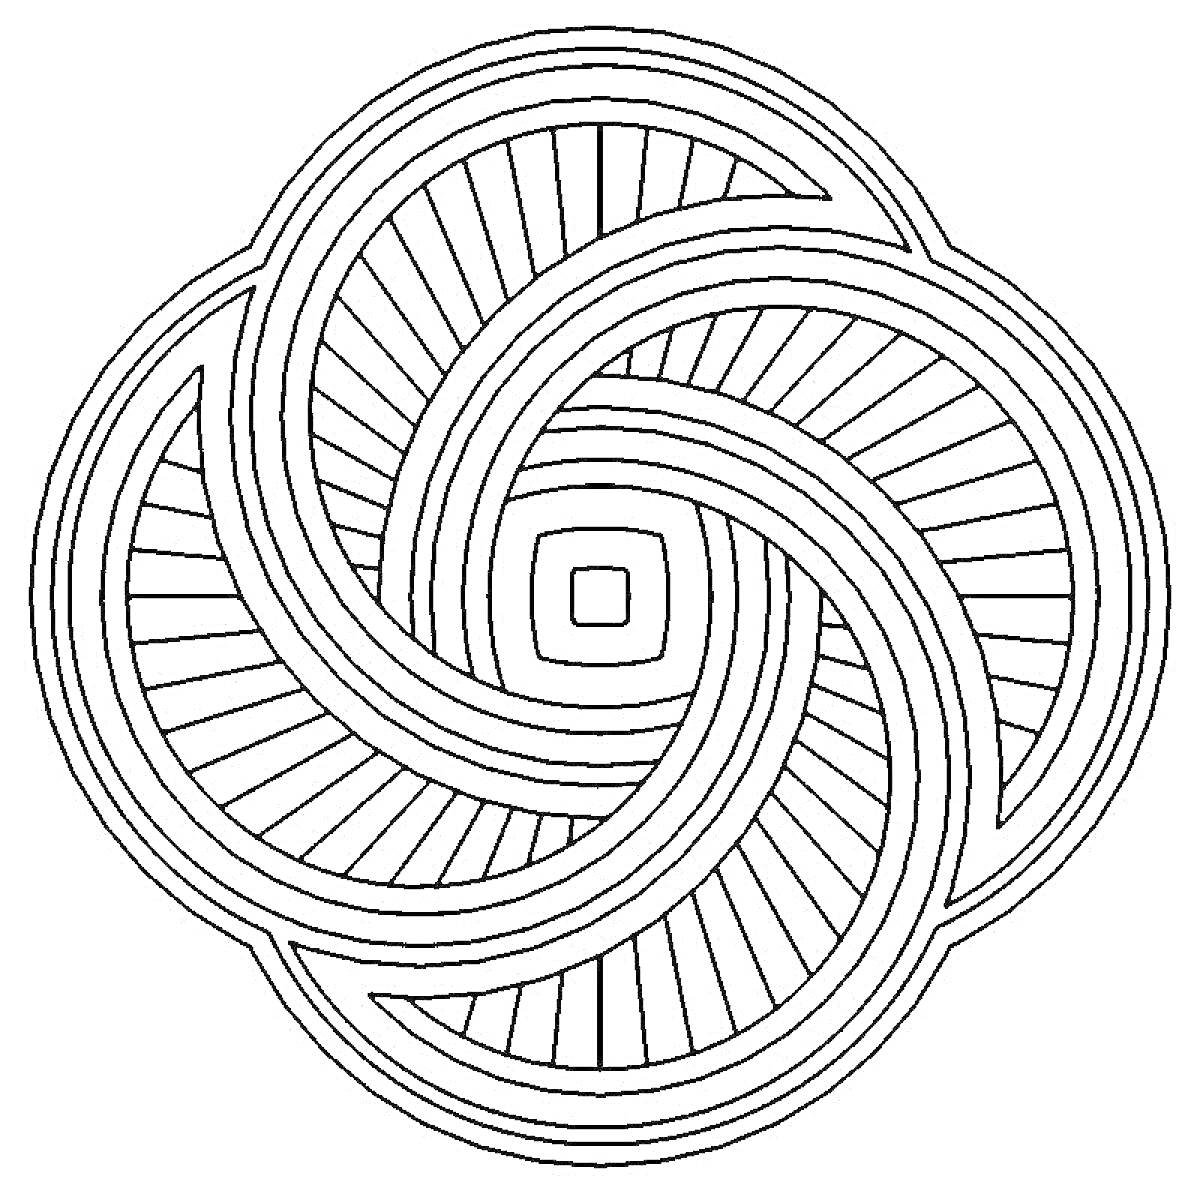 Раскраска Спиральный узор с пересекающимися линиями и квадратом в центре.